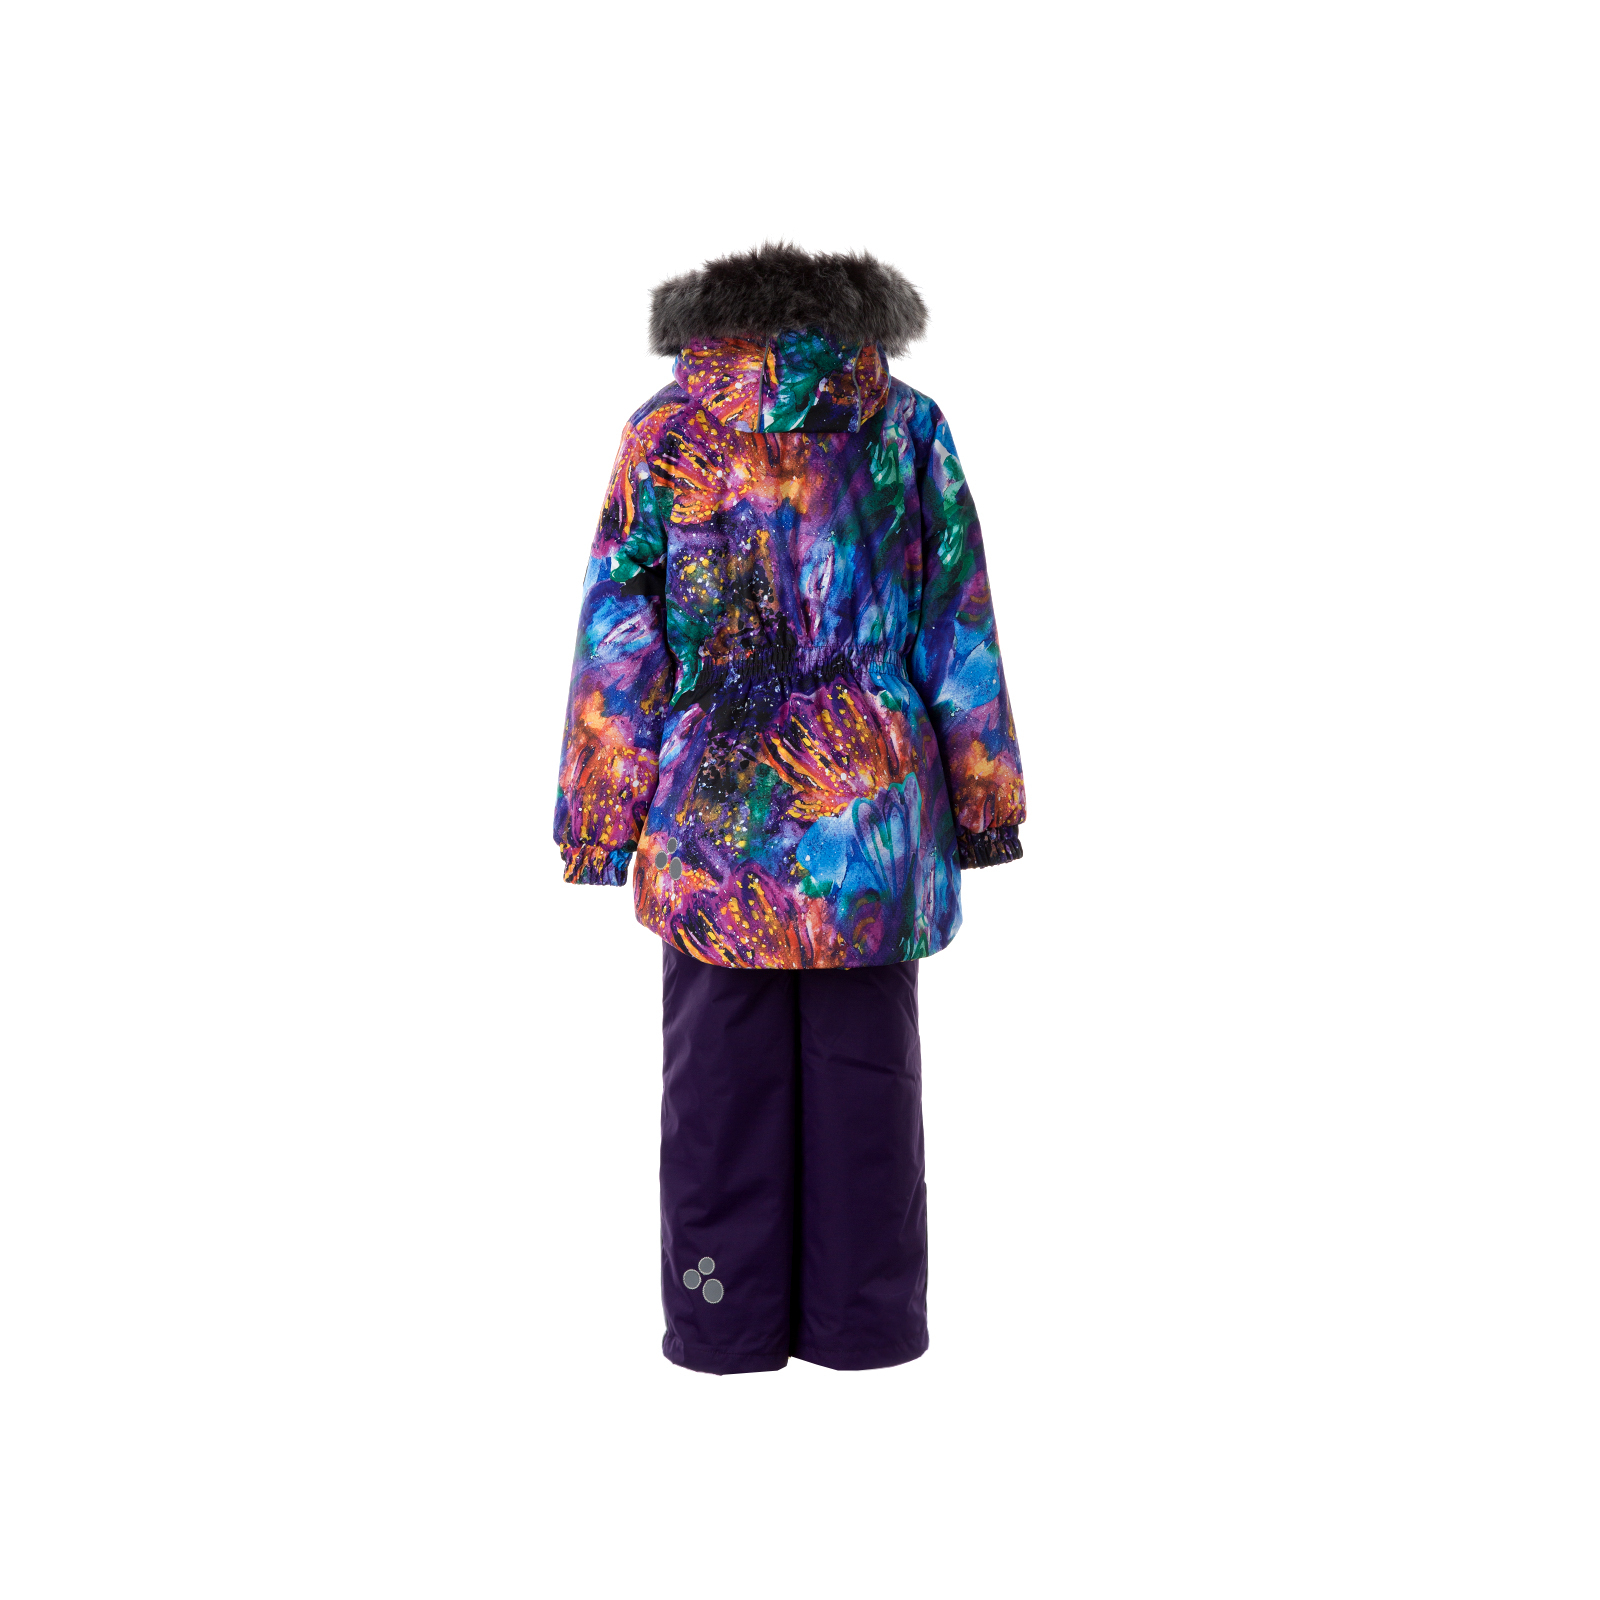 Комплект верхней одежды Huppa RENELY 2 41850230 пурпур с принтом/тёмно-лилoвый 92 (4741468978994) изображение 2